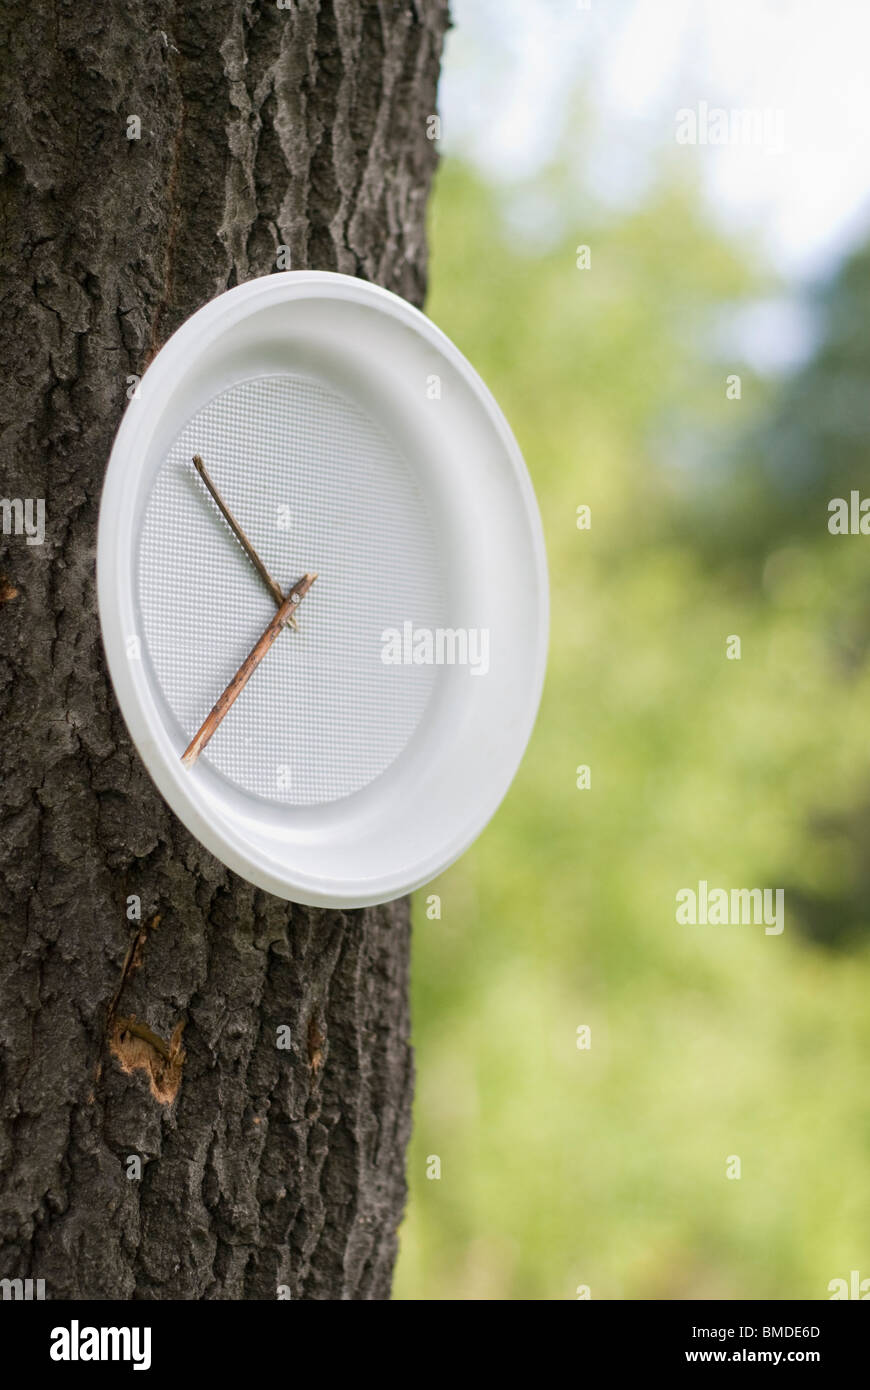 Kunststoffplatte als Uhr auf den Baumstamm Stockfotografie - Alamy